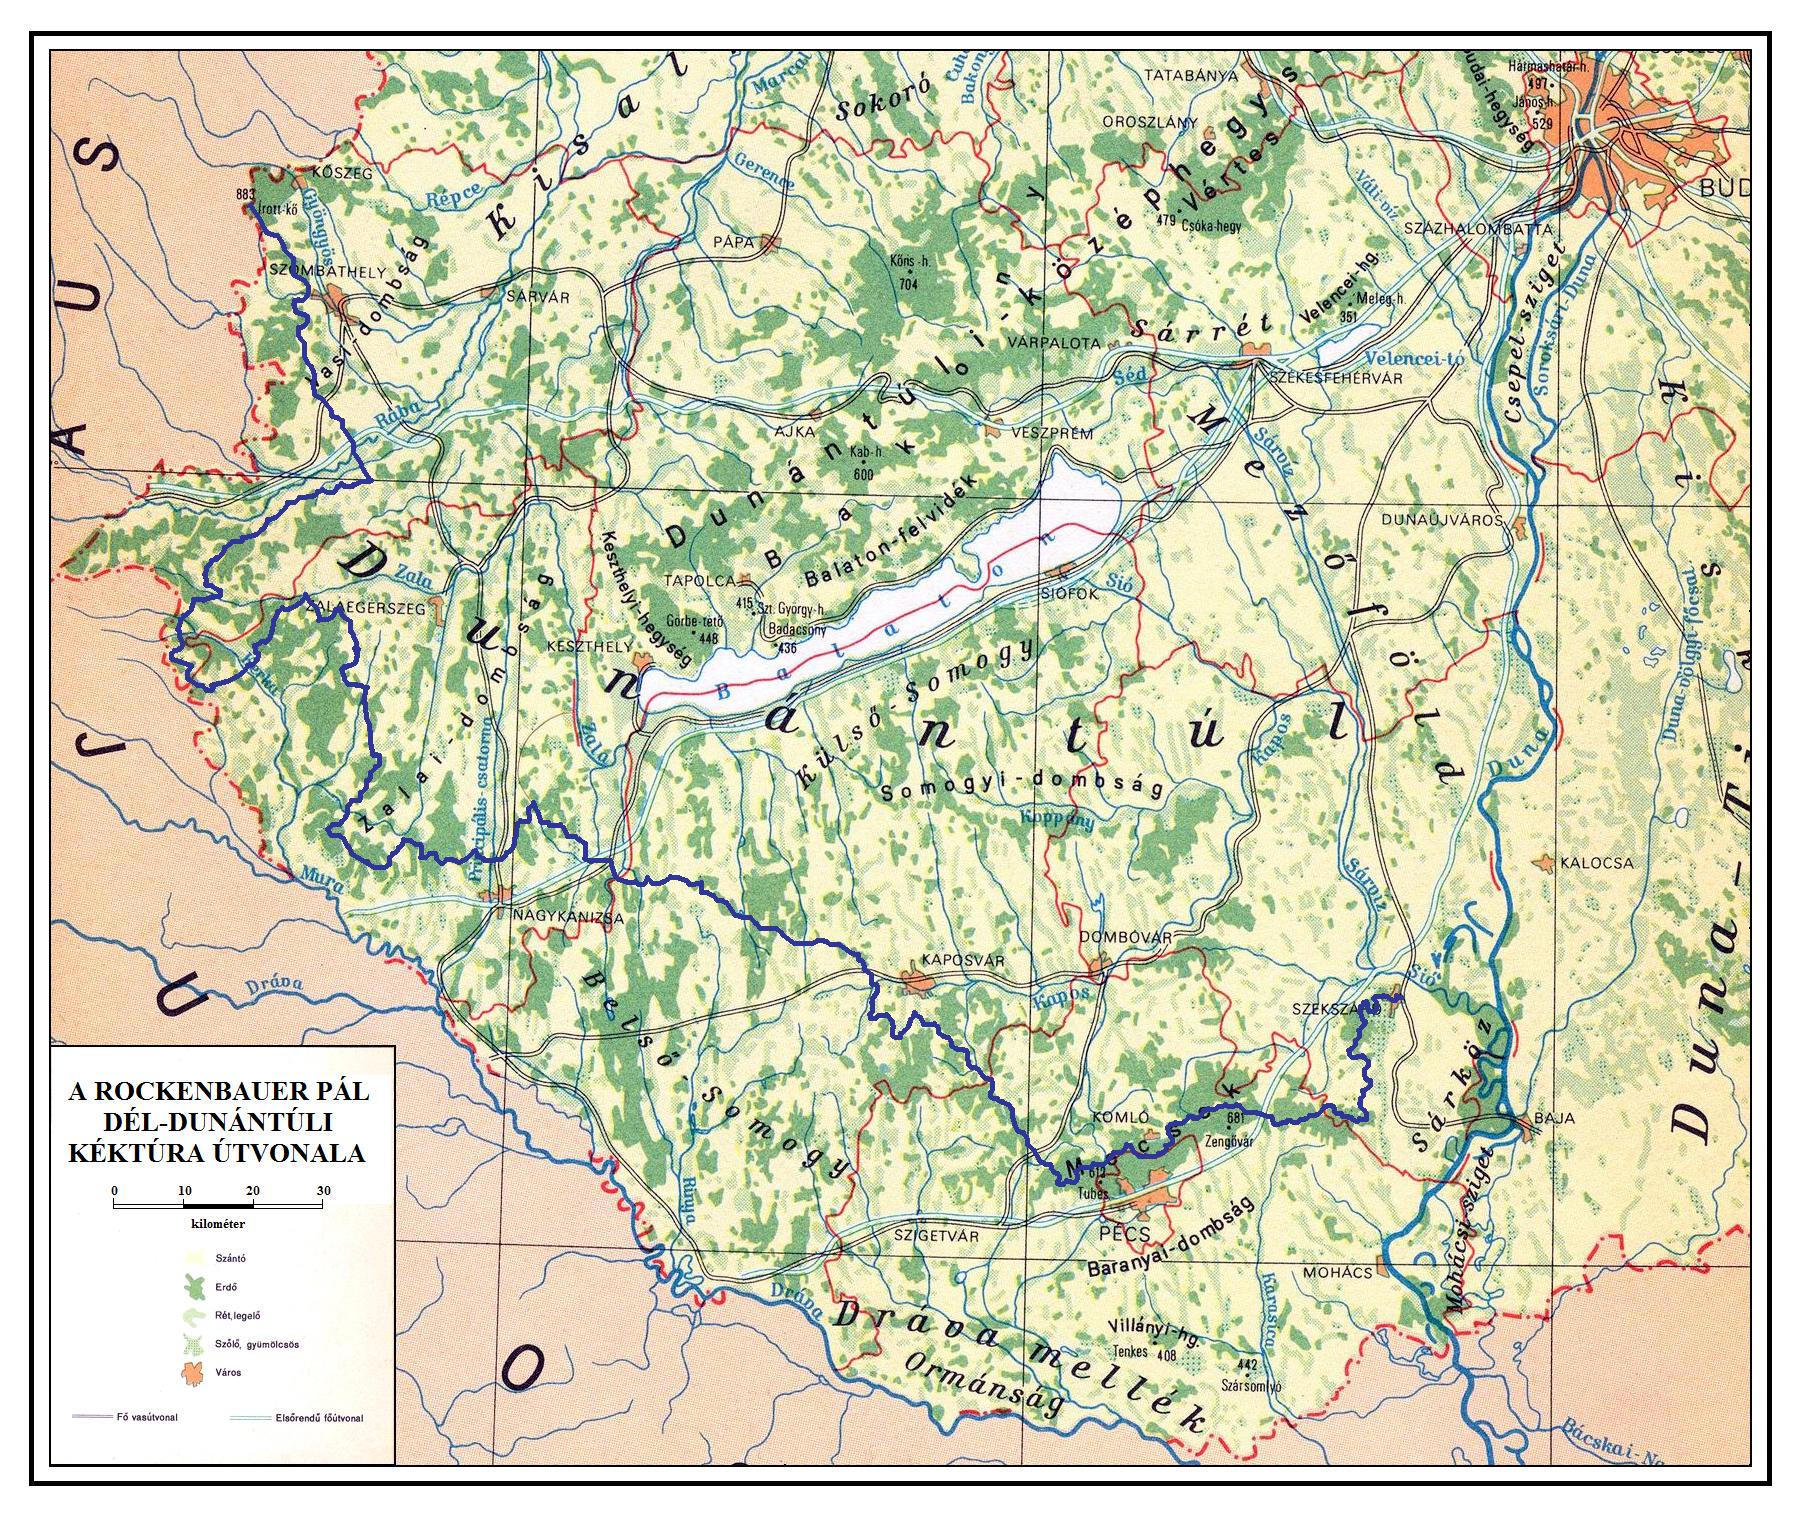 magyarország térkép dunántúl KÉKTÚRA HONLAP   A Rockenbauer Pál Dél dunántúli Kéktúra bemutatása magyarország térkép dunántúl